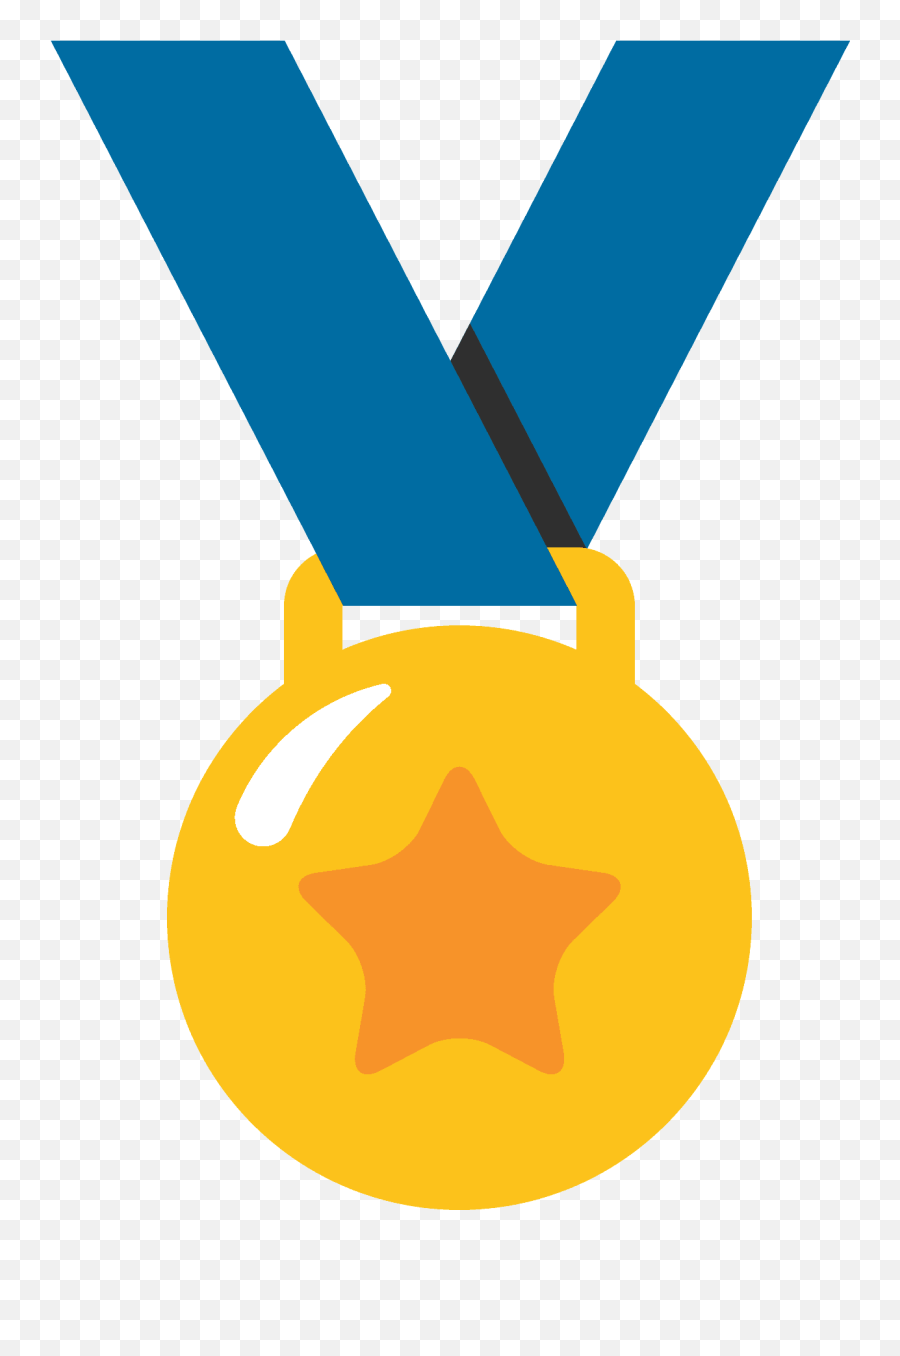 Sports Medal Emoji - Medal Emoji Transparent,Gold Medal Emoji